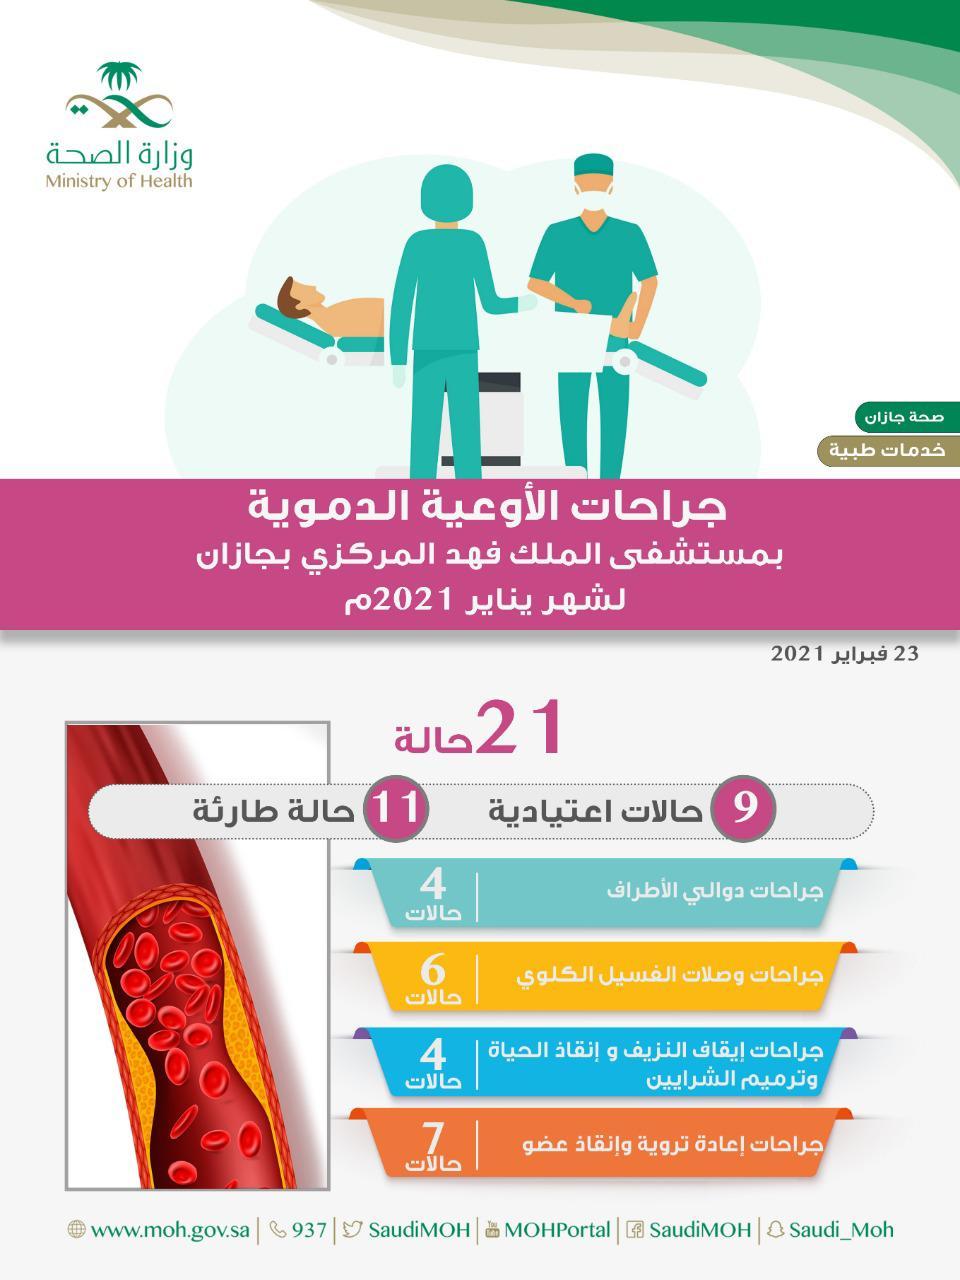 *21 جراحة أوعية دموية بمستشفى الملك فهد المركزي بجازان خلال يناير الماضي*